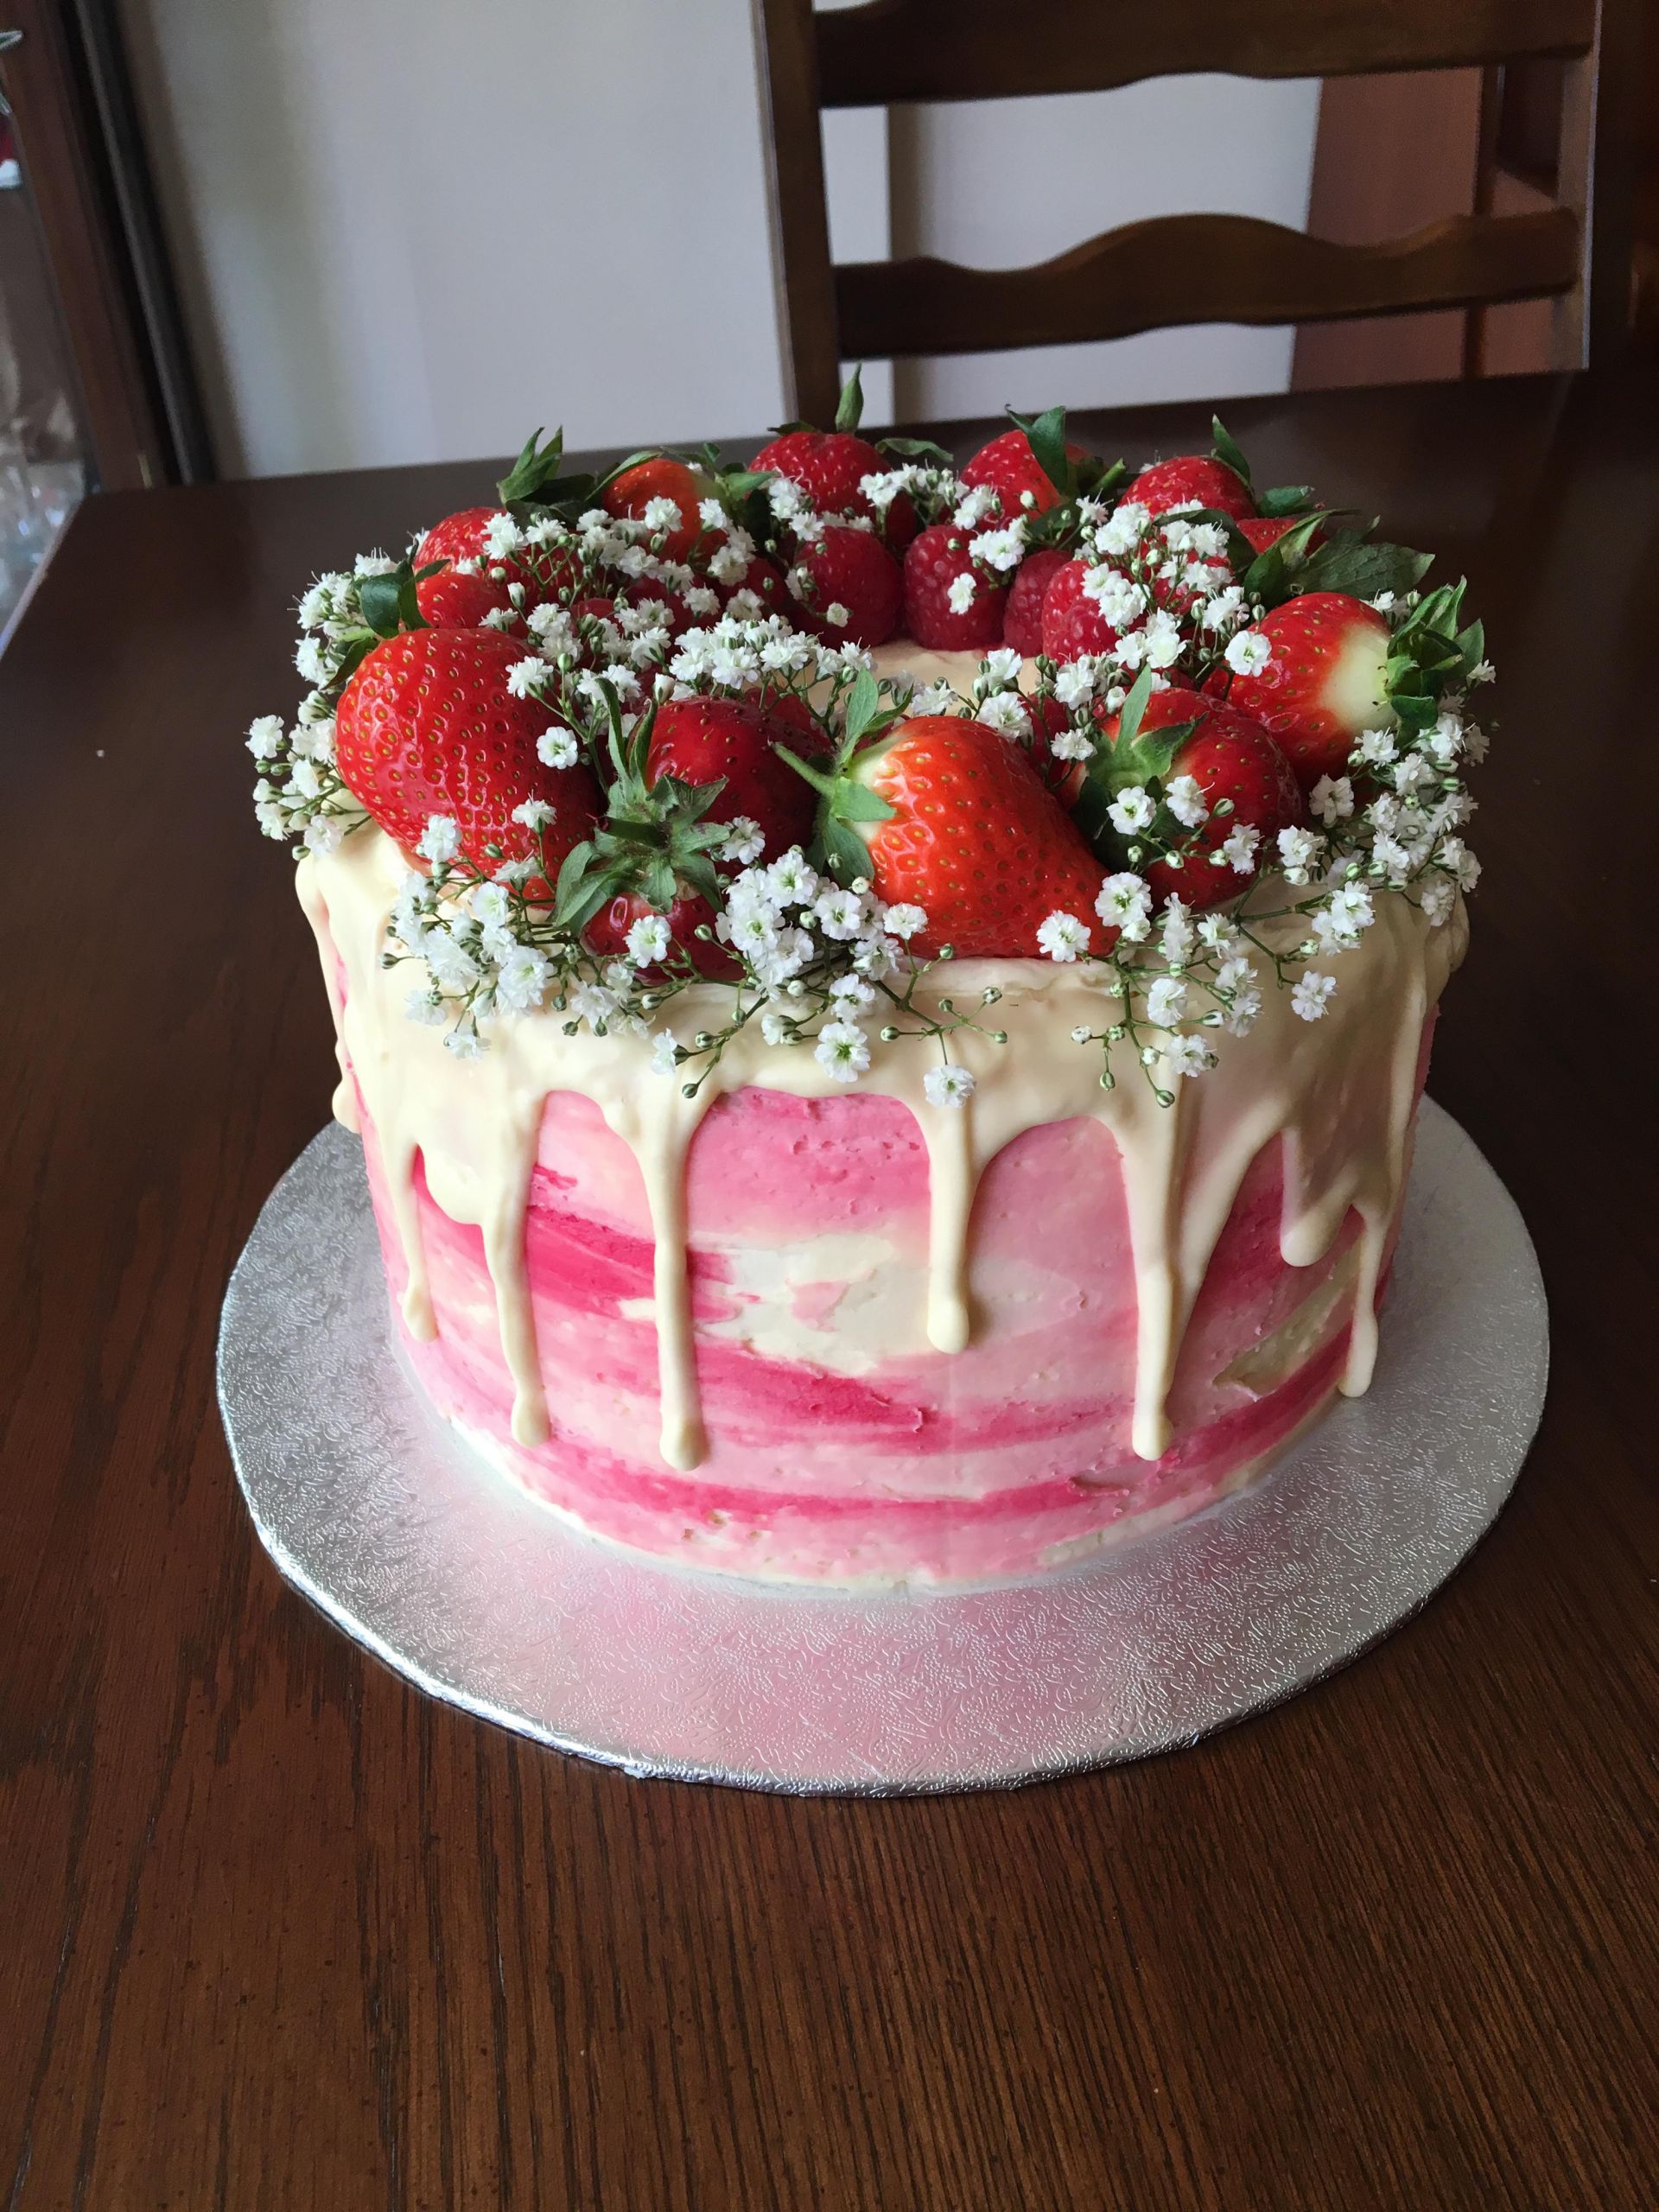 Strawberry Birthday Cake Best Of Strawberry White Chocolate Drip Birthday Cake Baking